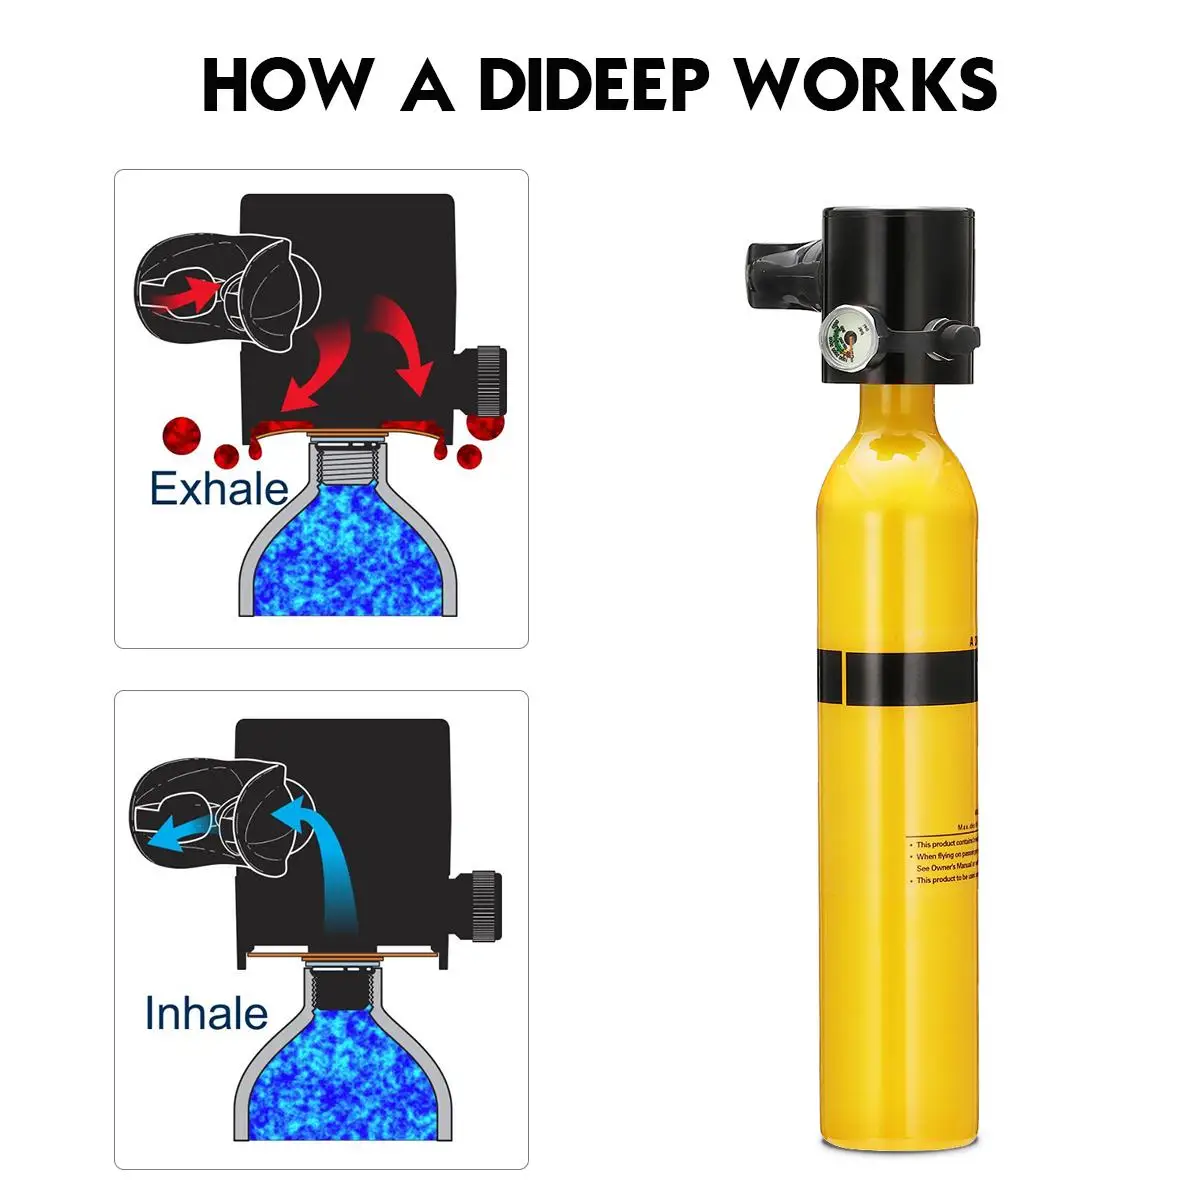 DIDEEP система дайвинга мини дыхательнай аппарат для плавания под водой резервуар для подводного кислорода цилиндр запасной Воздушный бак насос алюминиевая коробка подводное плавание оборудование для дайвинга